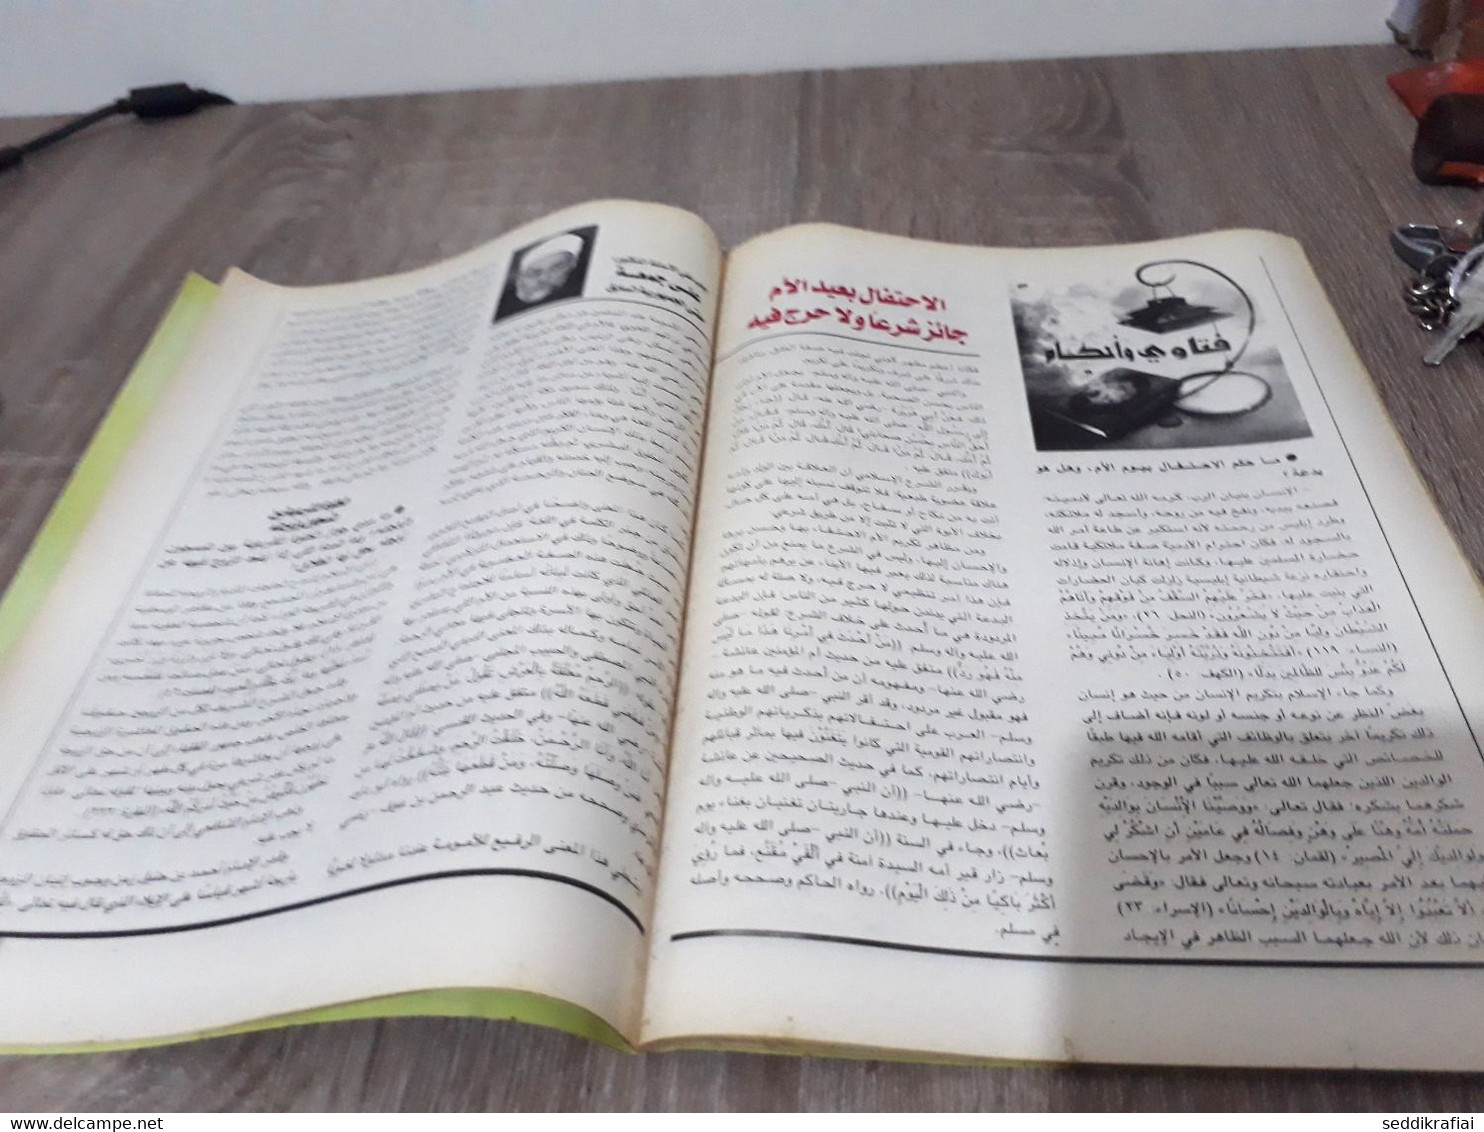 Magazine Arabic Egyptian Islamic Mysticism 2014 - مجلة التصوف الاسلامي العدد 425 - Zeitungen & Zeitschriften